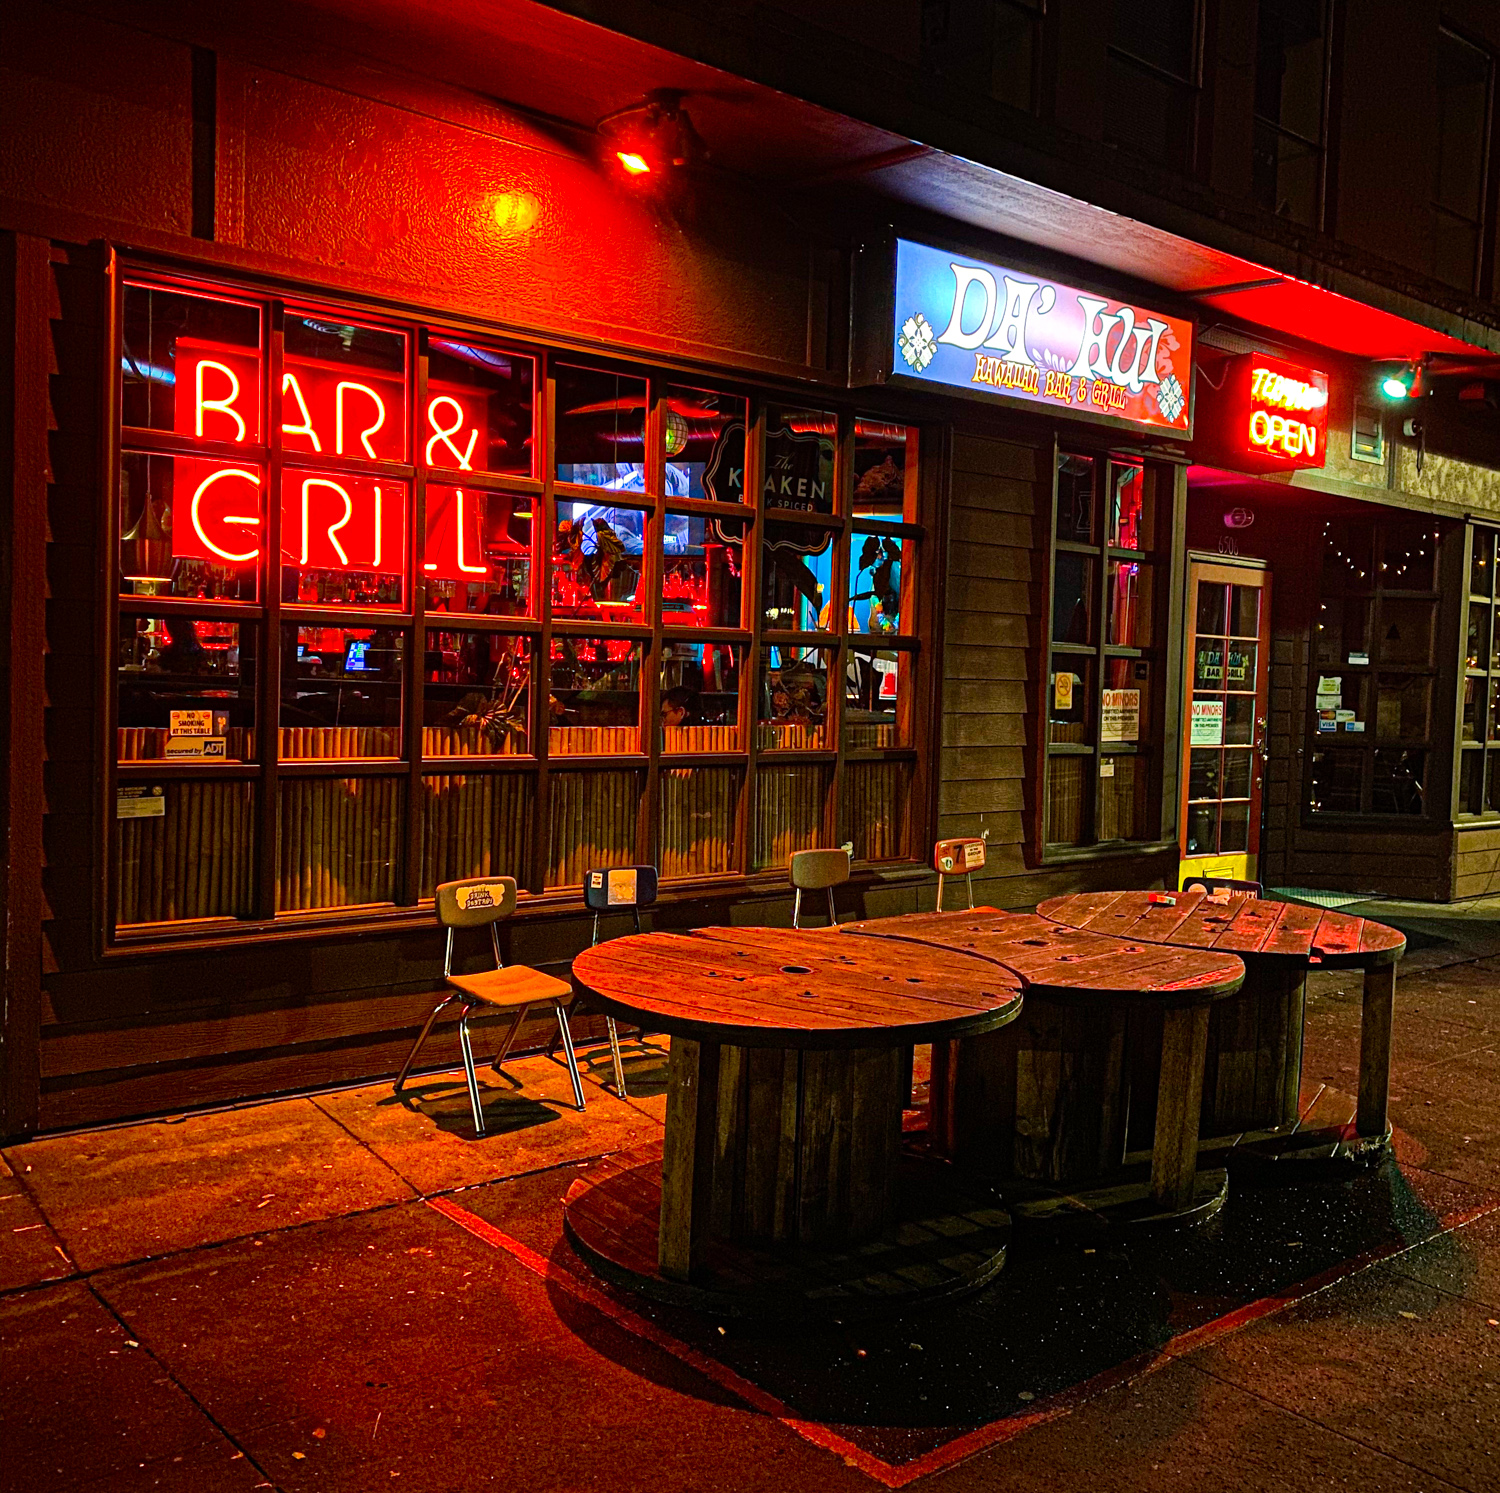 Da’ Hui Bar & Grill Portland Dive Bars Photo by Steven Shomler 